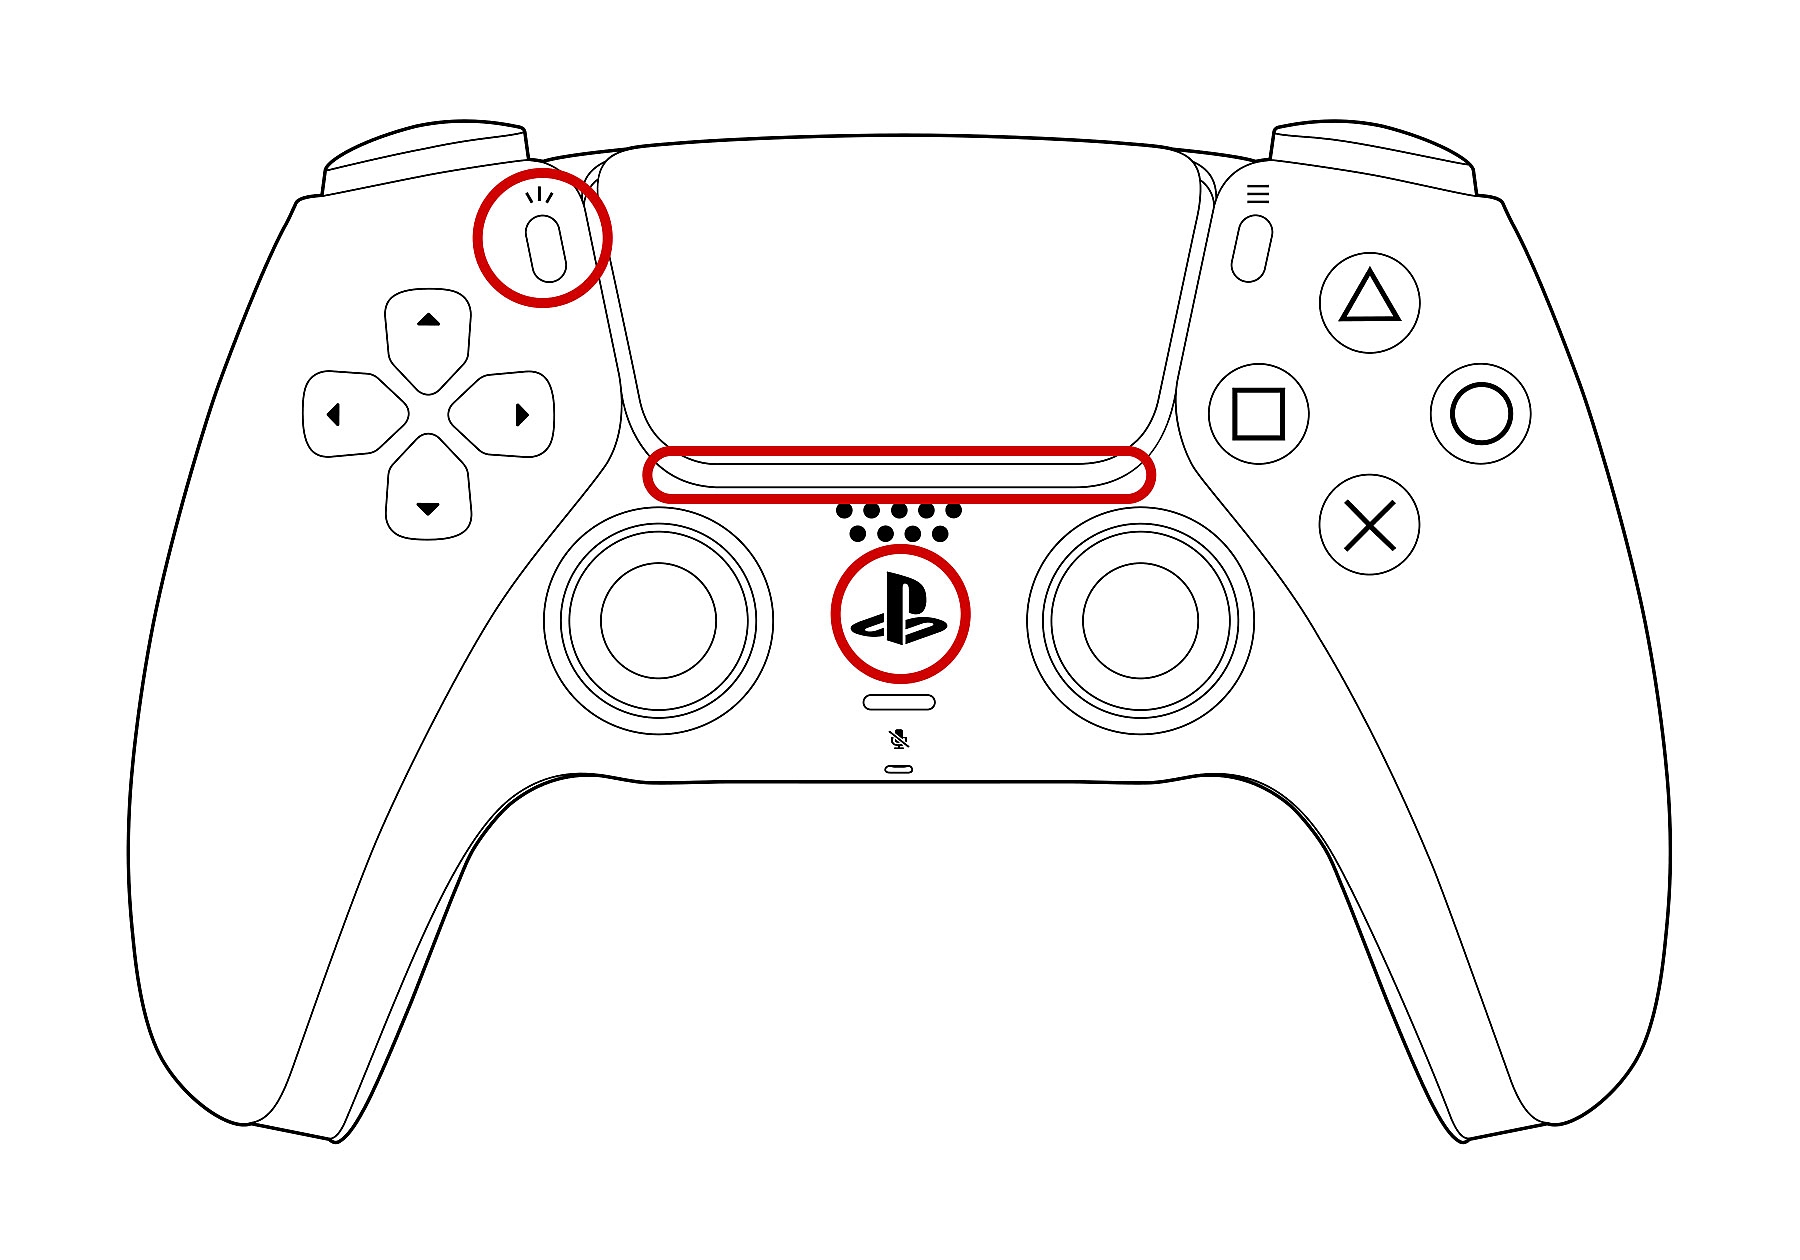 Vista frontal del mando inalámbrico DualSense con el indicador luminoso, el botón PS y el botón de crear marcados con un círculo.